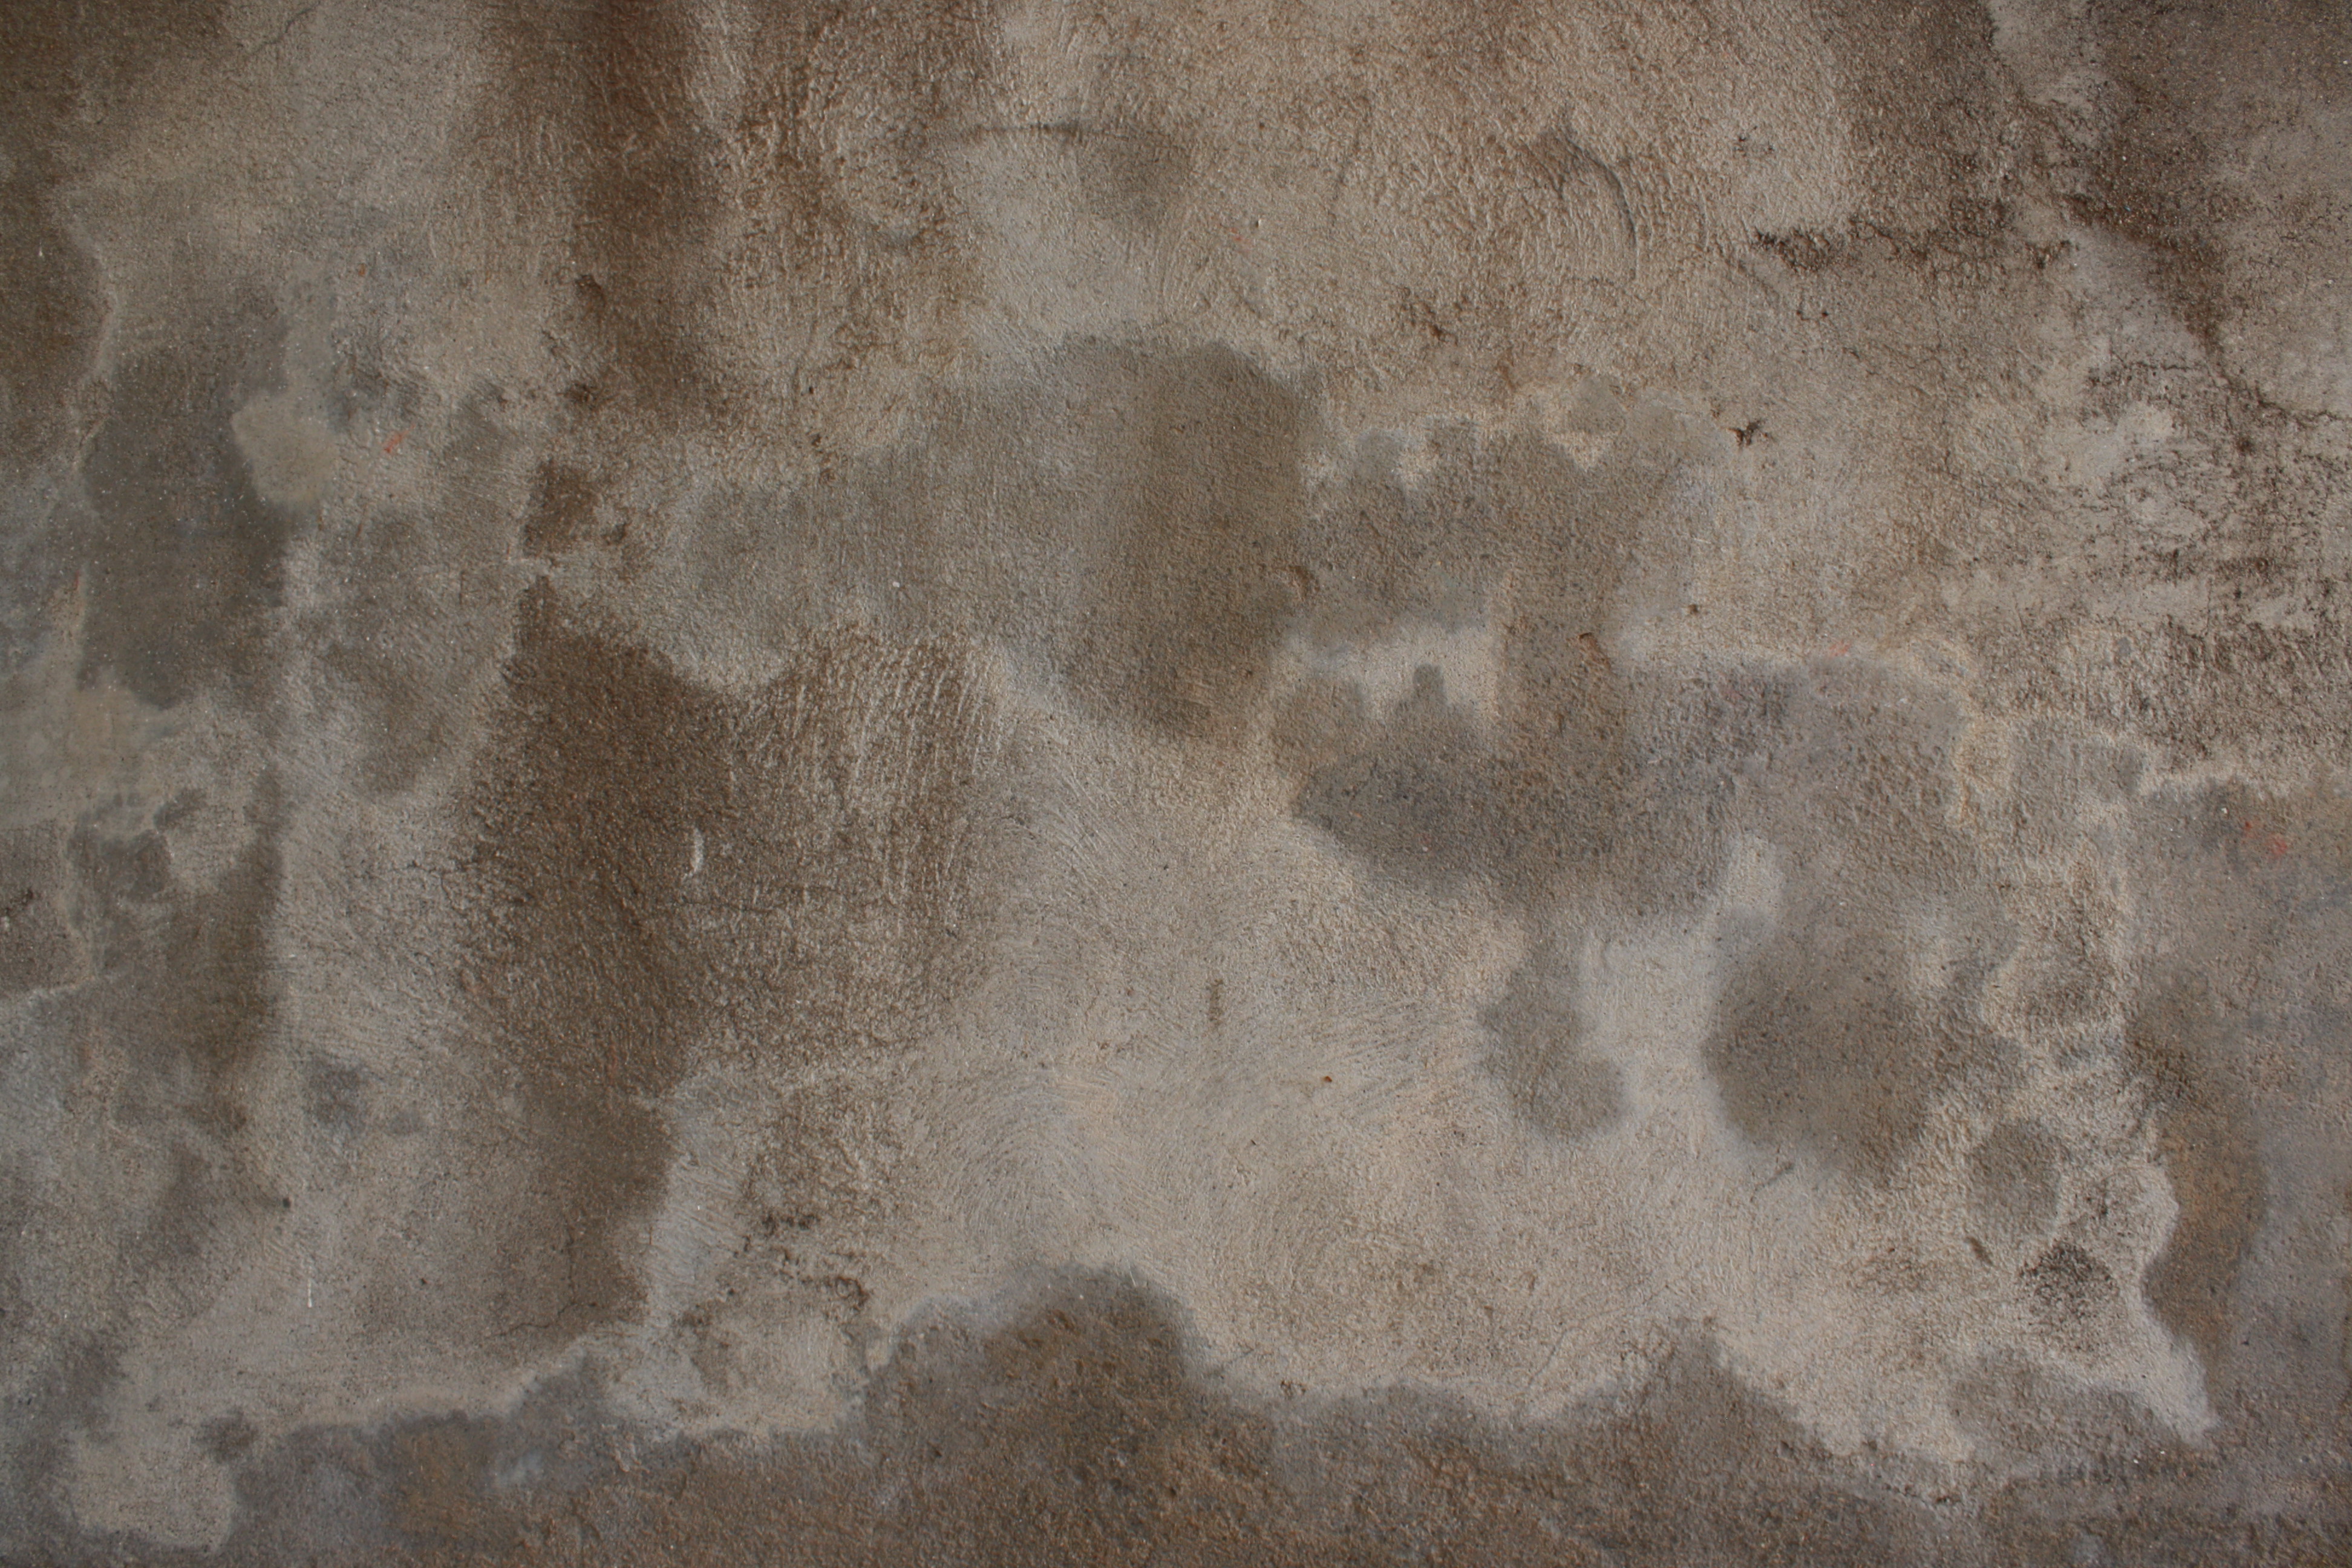 Blotchy Concrete Texture Picture | Free Photograph | Photos Public ...